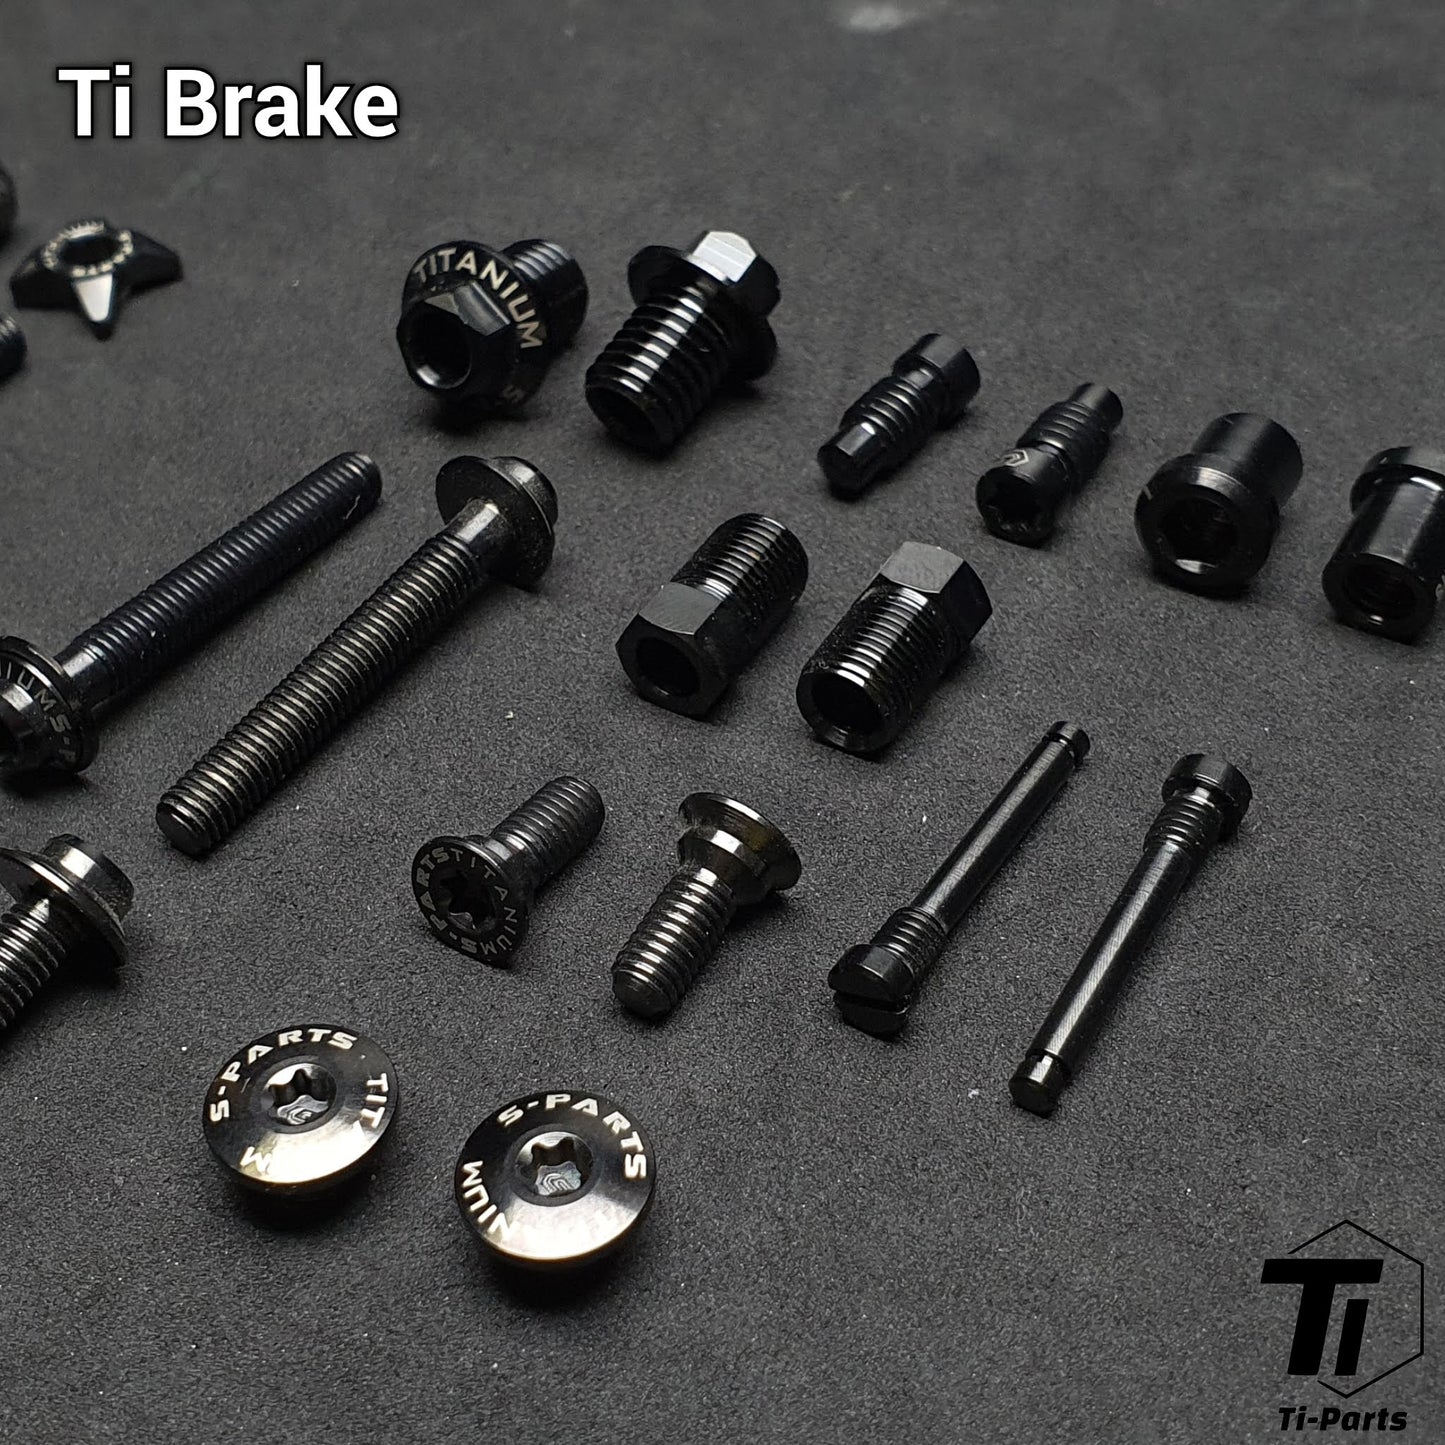 Titanium-Upgrade-Kit für R9270 R8170 R7170 Shimano | Dura Ace Ultegra 105 12s R9200 R8150 Antriebsstrangbremse | Titaniumschraube